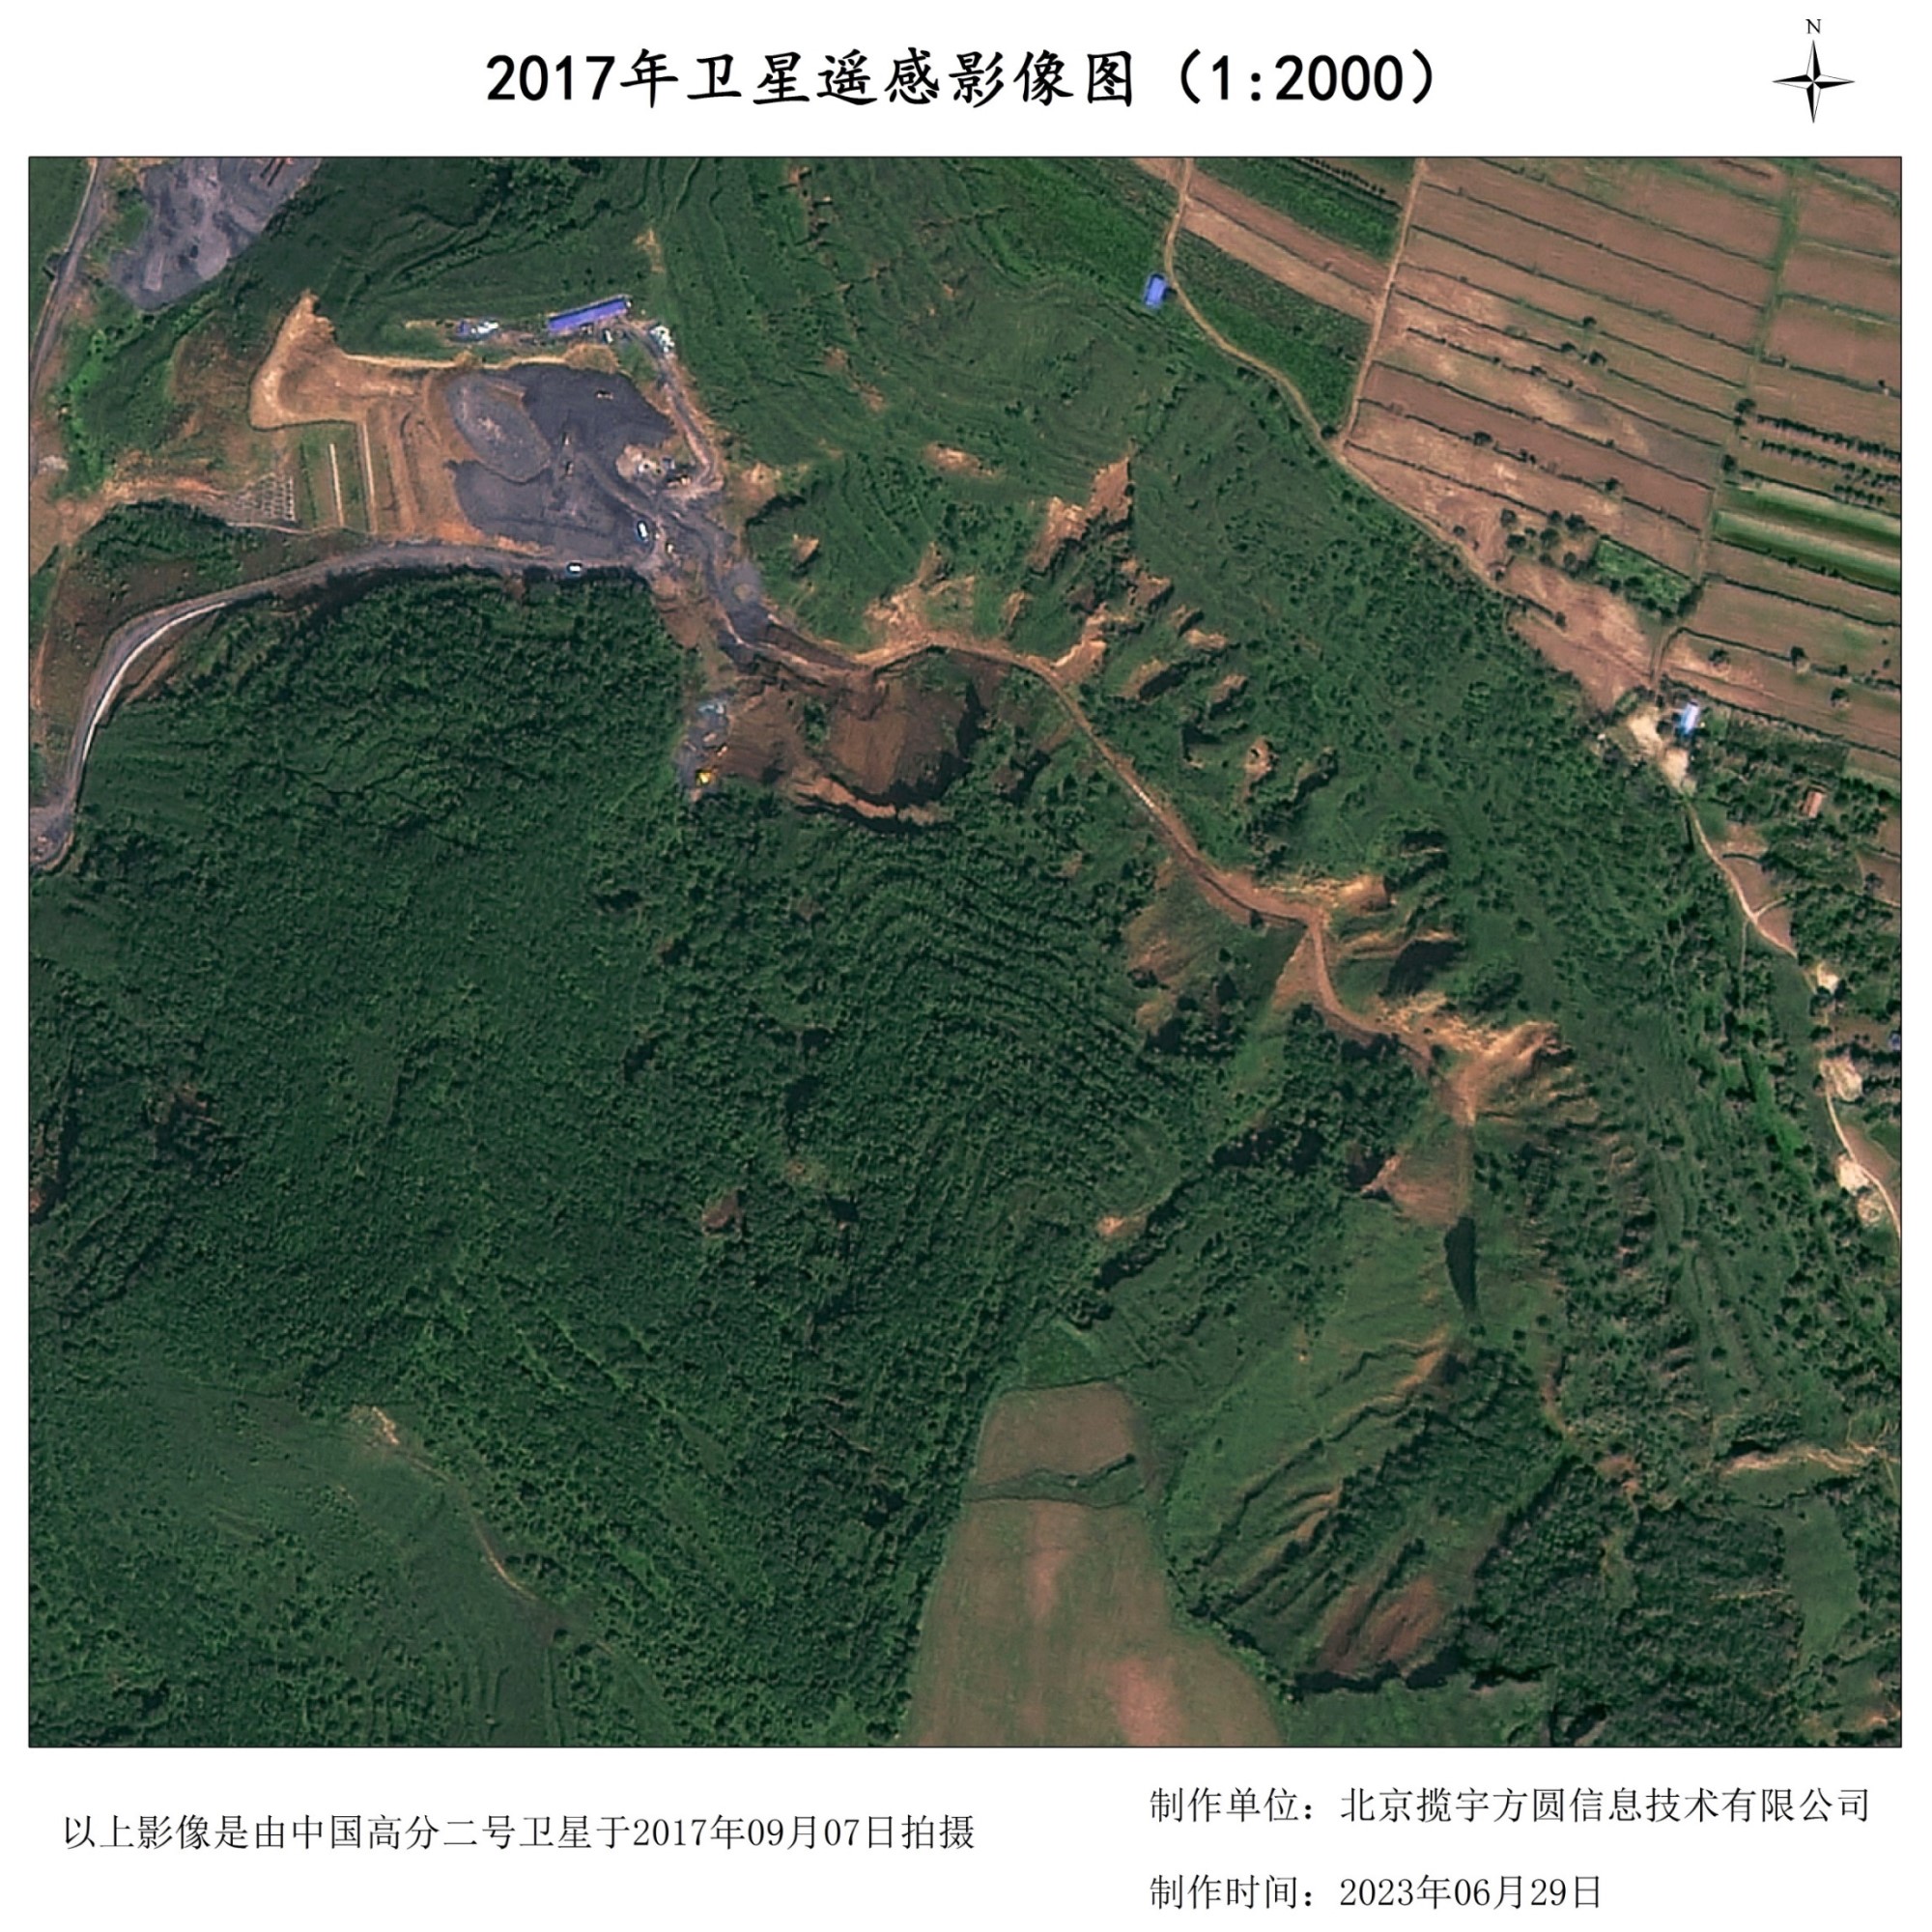 不同年份下0.5米分辨率同一地区的卫星图样例